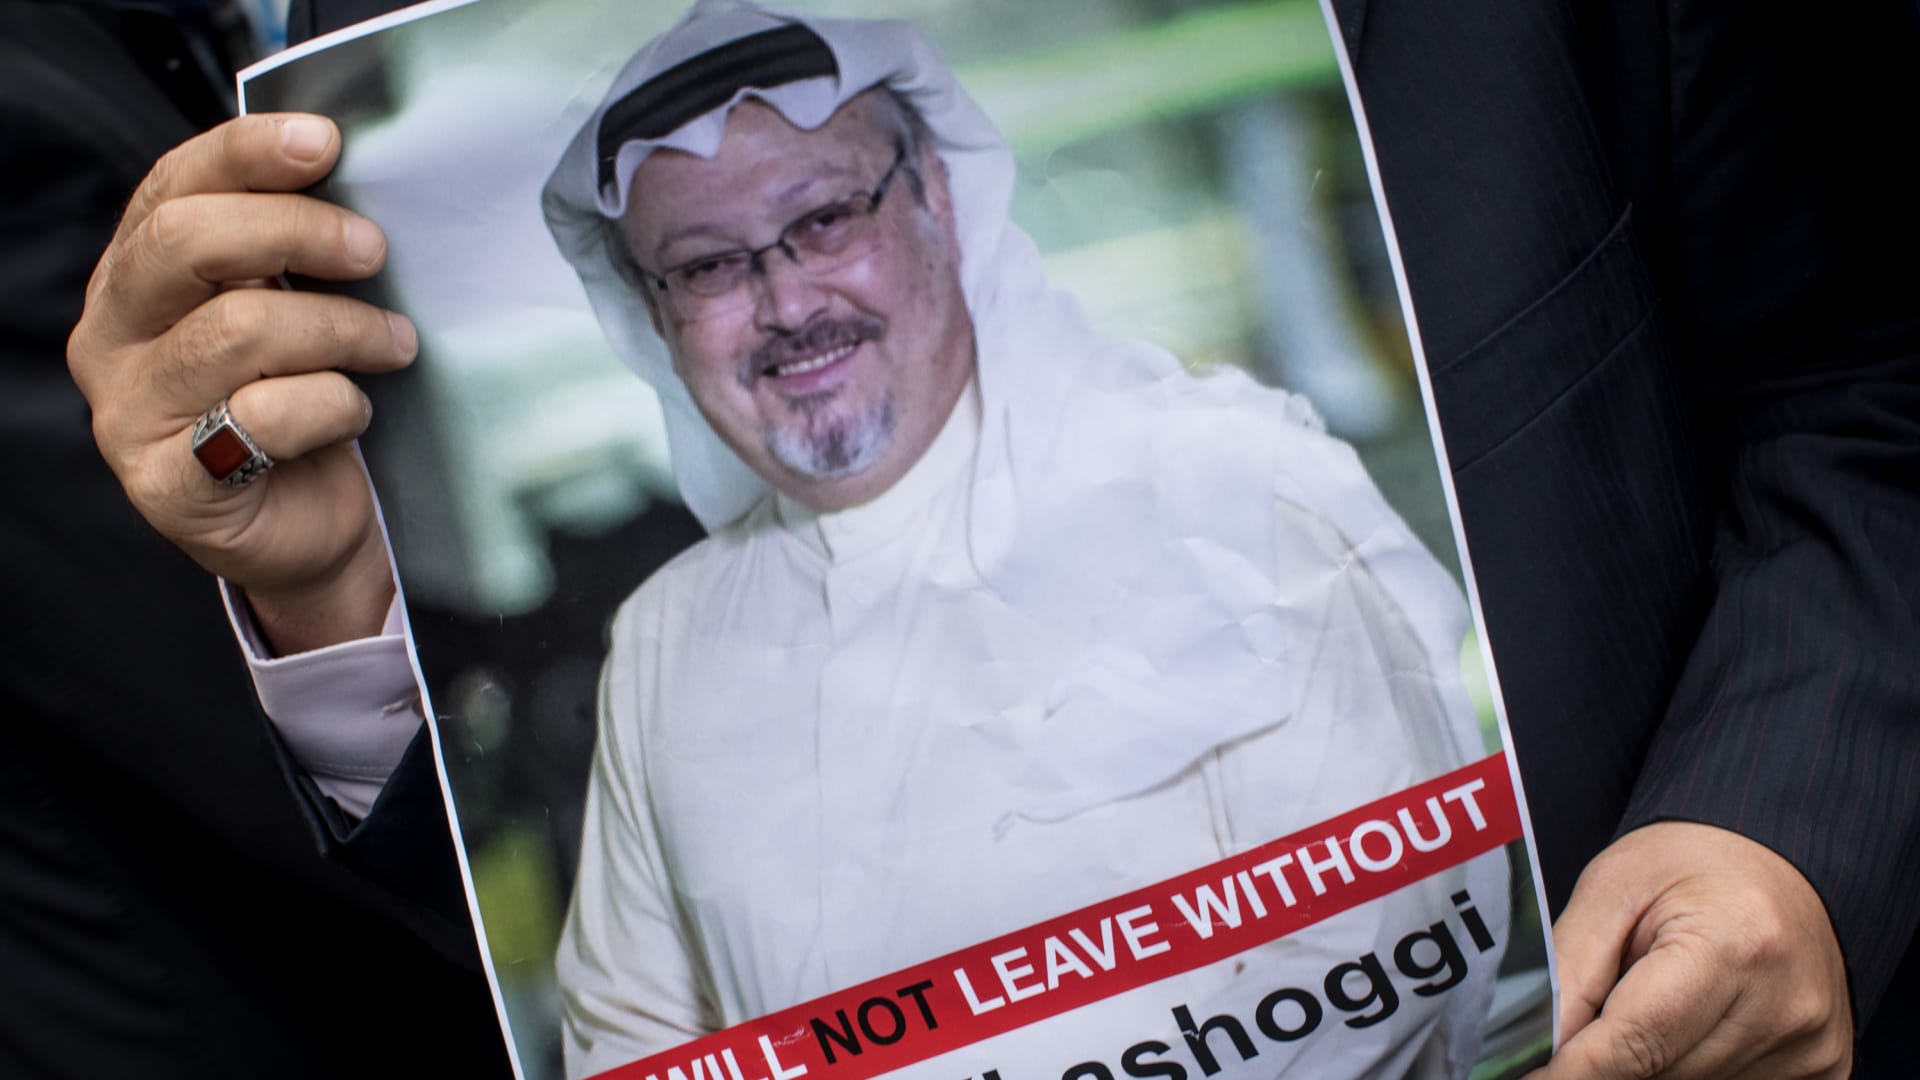 وزير خارجية السعودية عن مقتل خاشقجي: المملكة أخذت الجريمة على محمل الجد وتتحمل مسؤولياتها